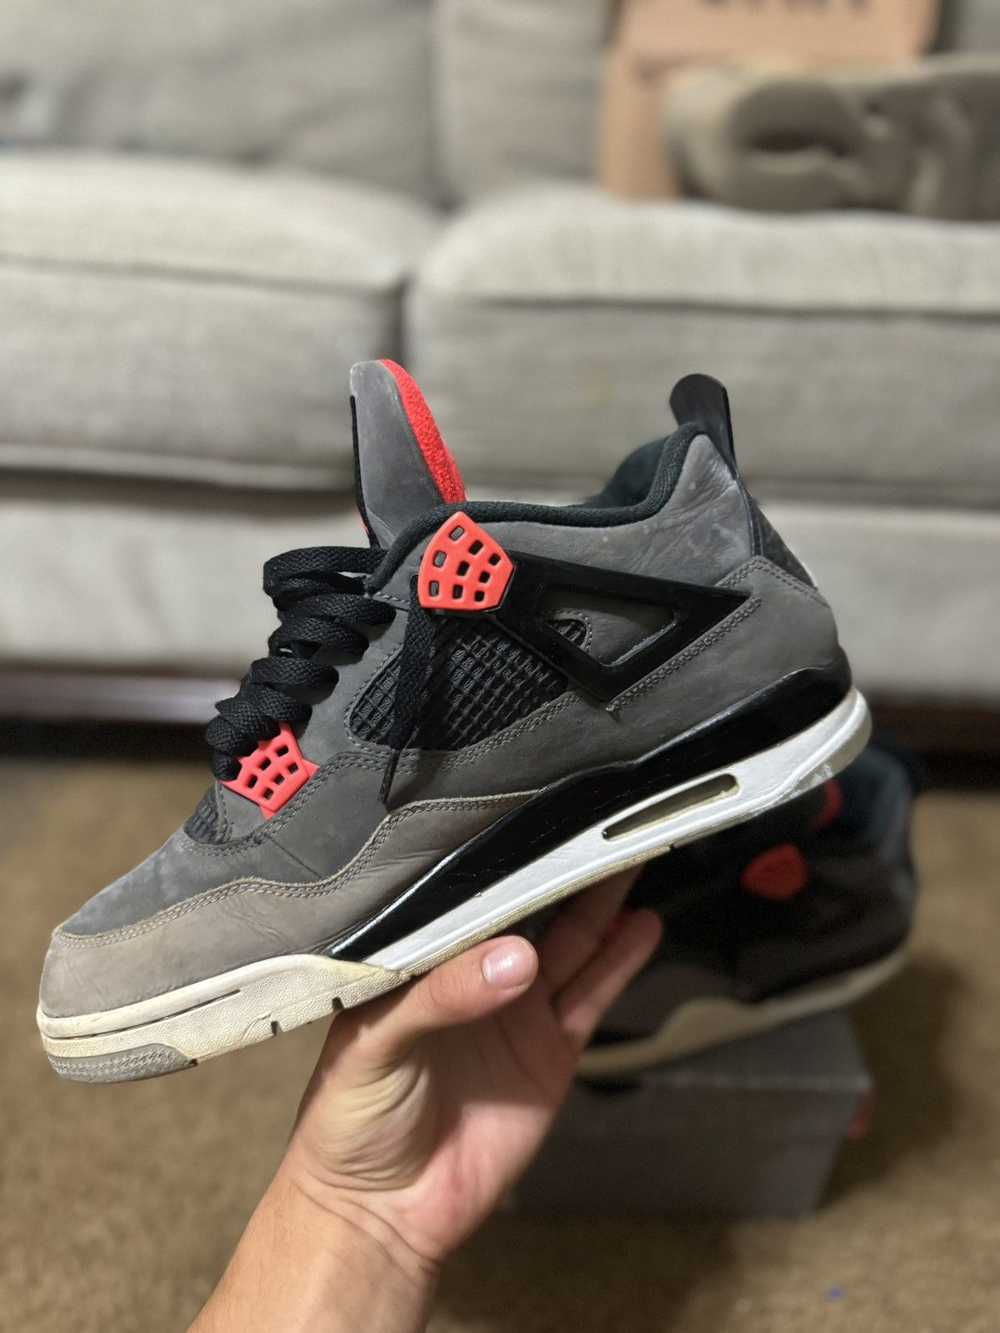 Jordan Brand × Nike × Sneakers Jordan 4 “Infrared” - image 7